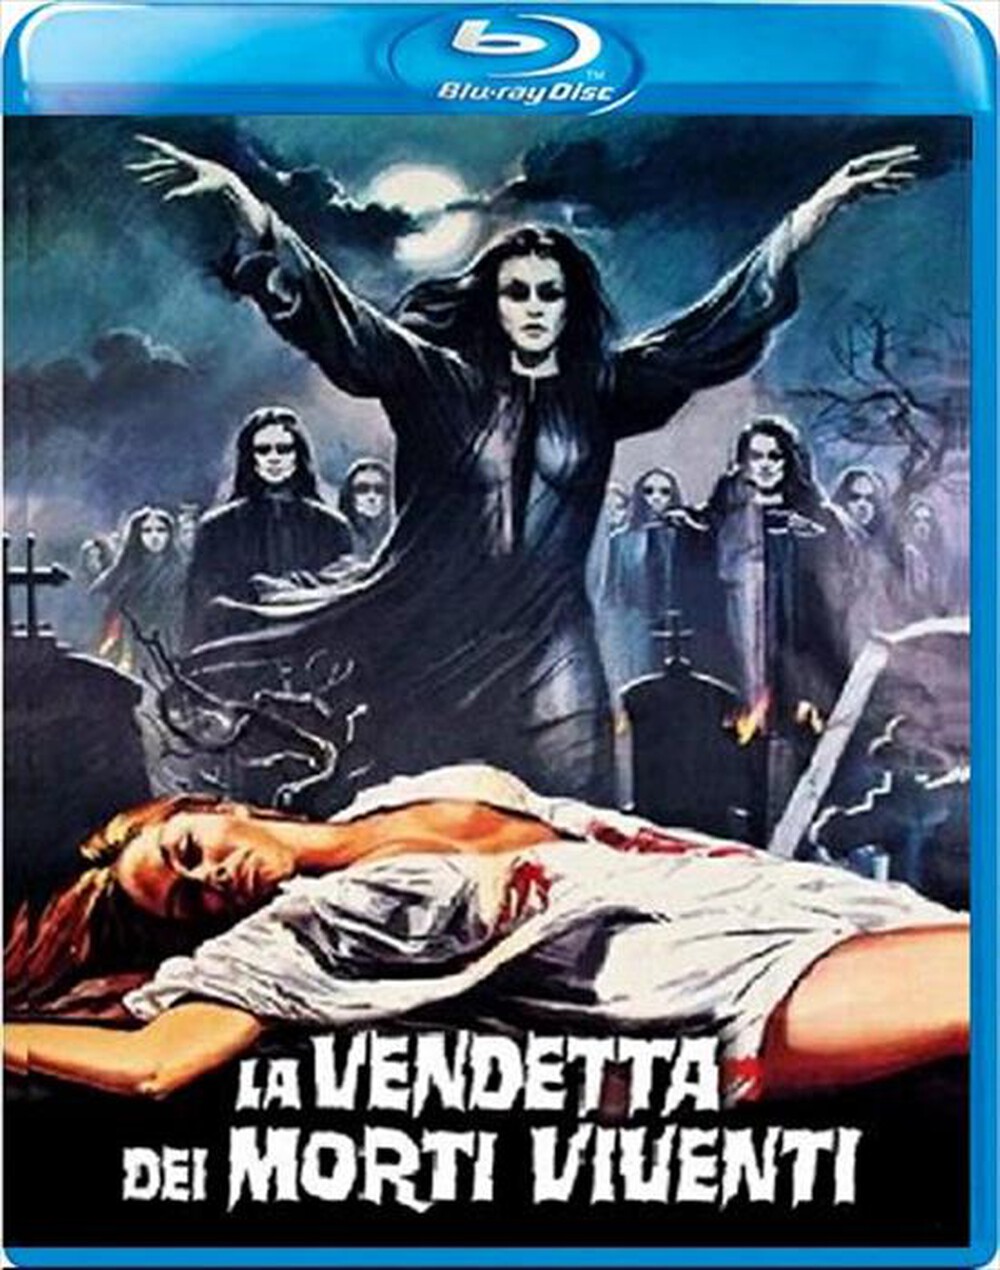 "QUADRIFOGLIO - Vendetta Dei Morti Viventi (La) (1986)"